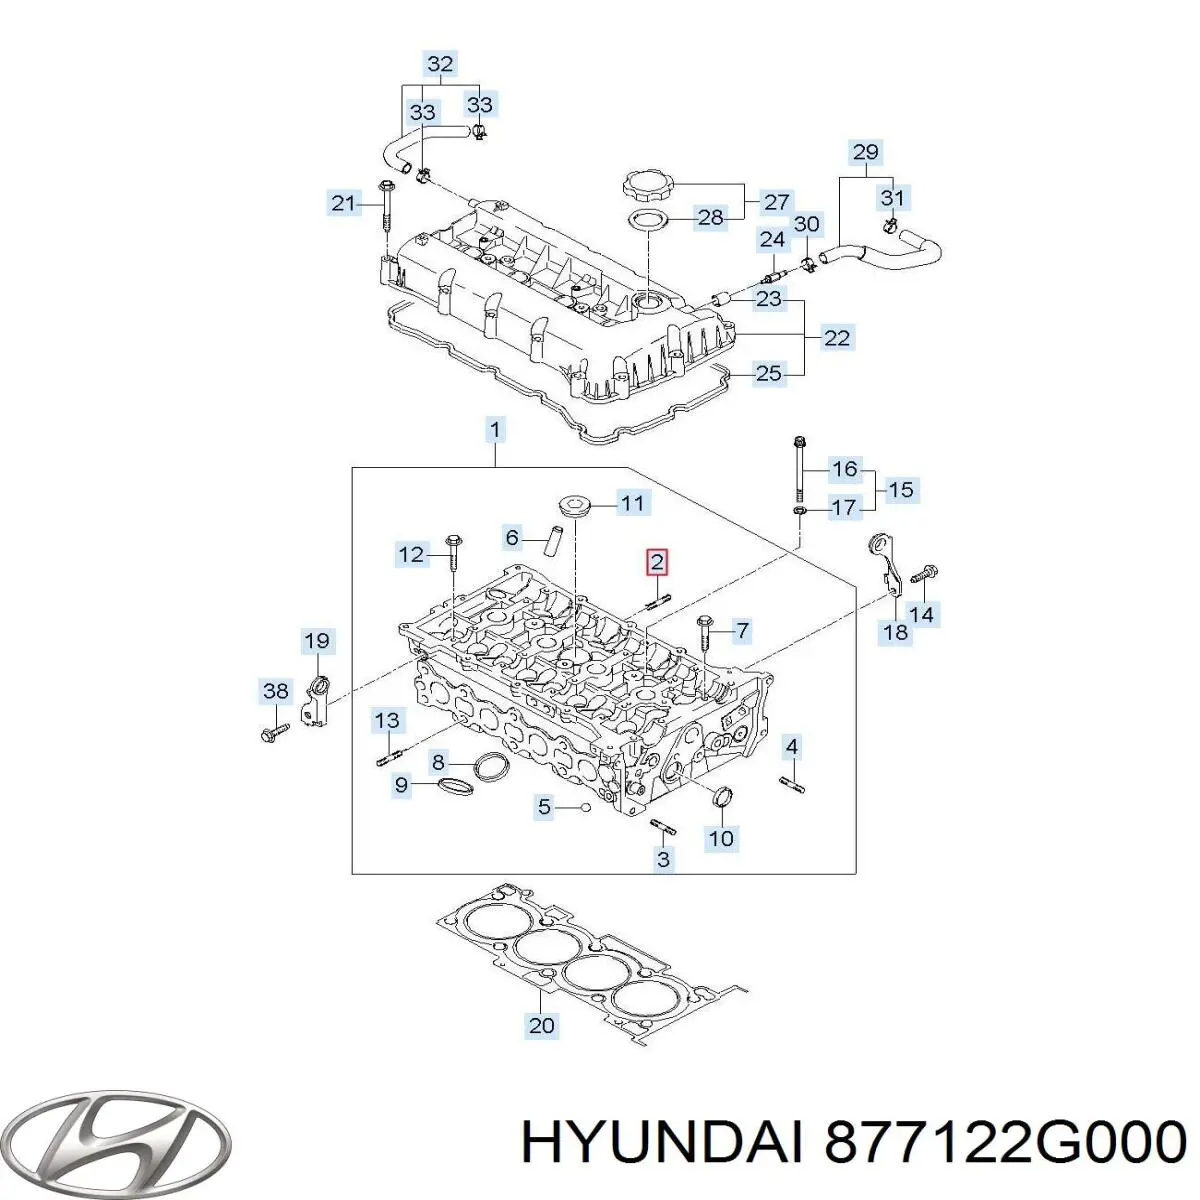 877122G000 Hyundai/Kia moldura de la puerta delantera derecha